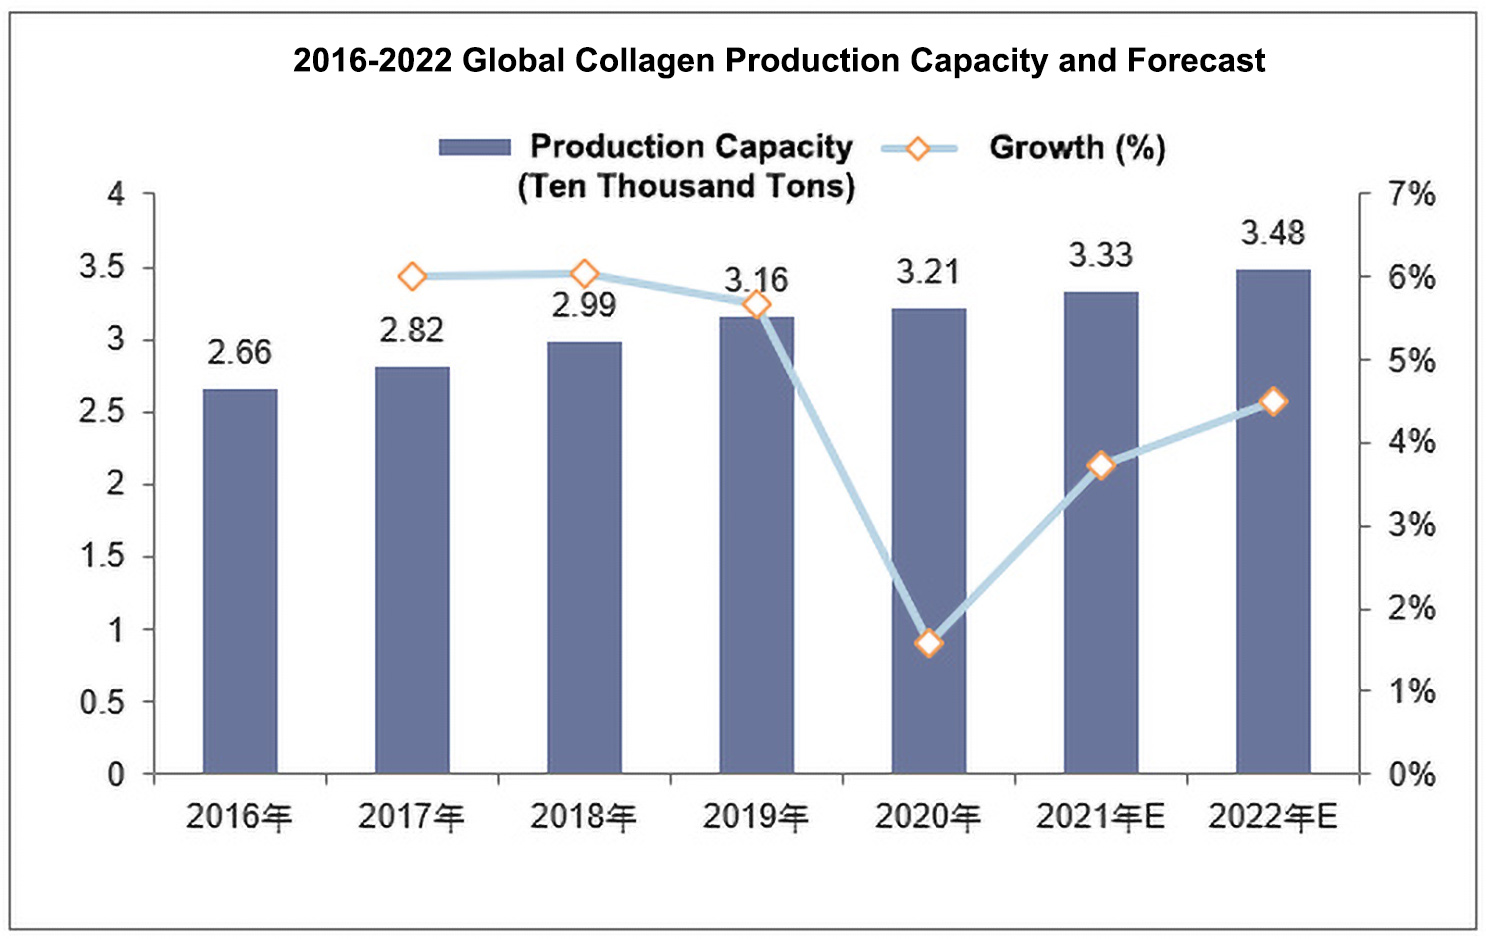 Relatório de perspectiva do status de desenvolvimento da indústria global de colágeno 2022-2028